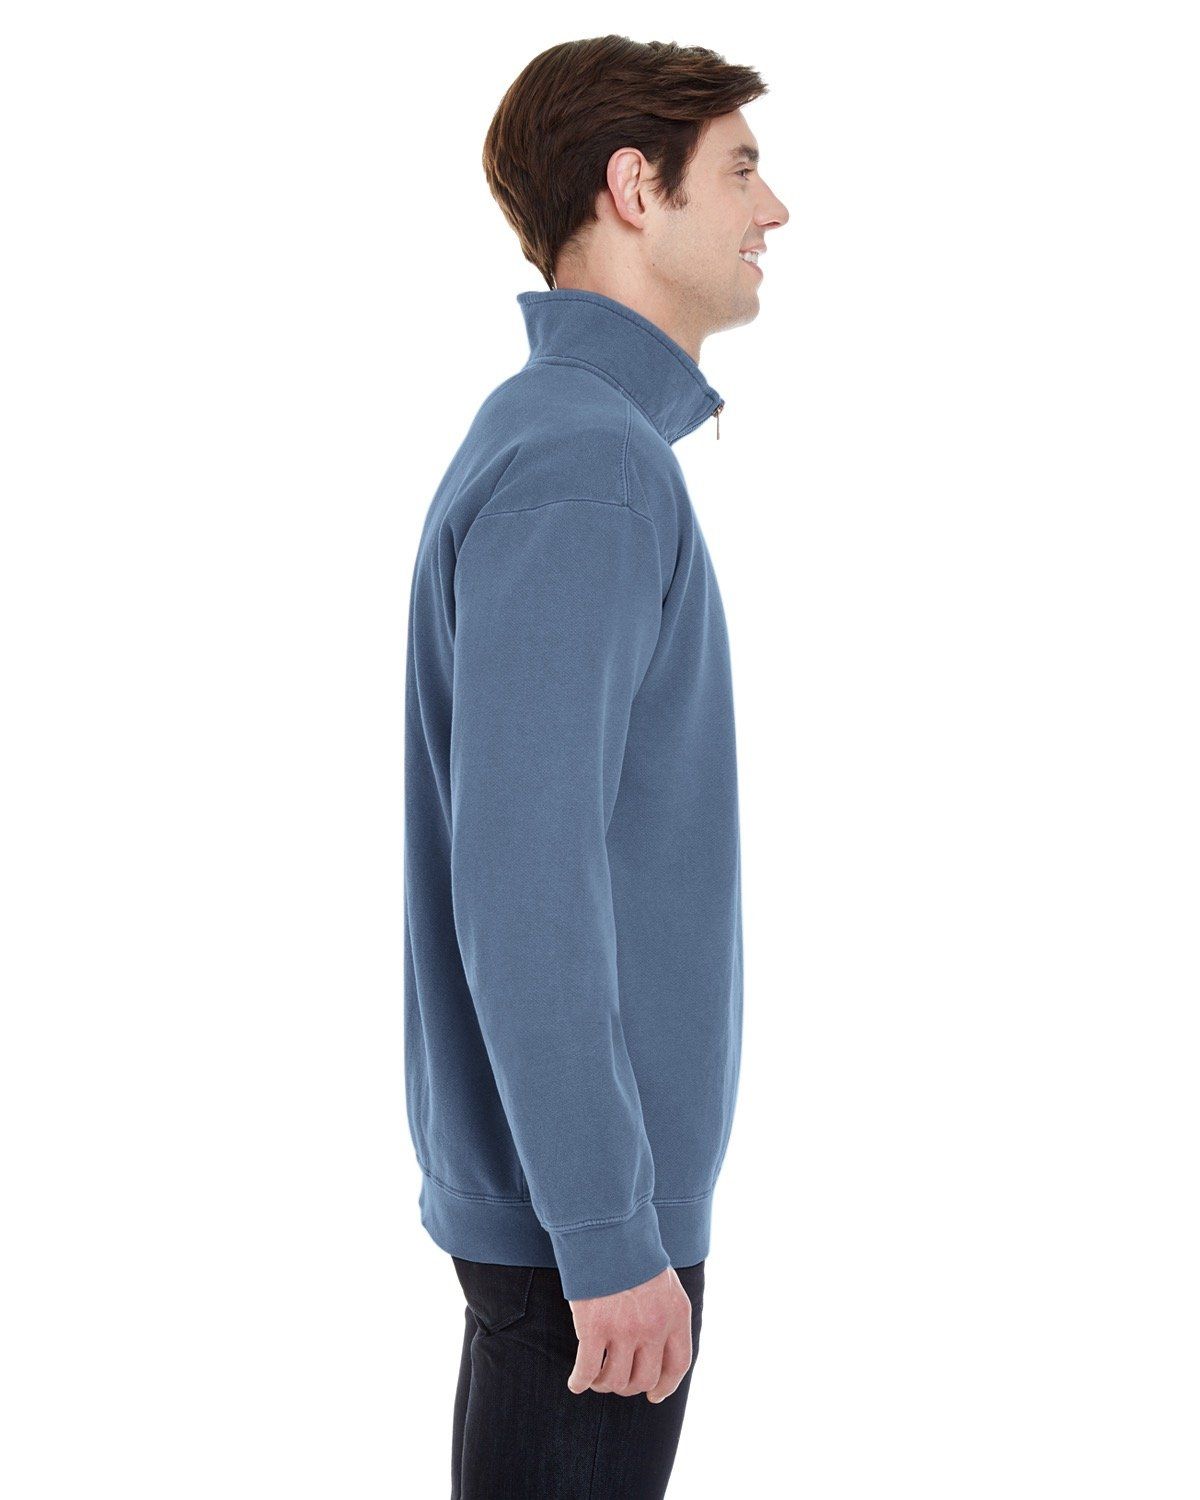 'Comfort Colors 1580 Adult Quarter-Zip Sweatshirt'